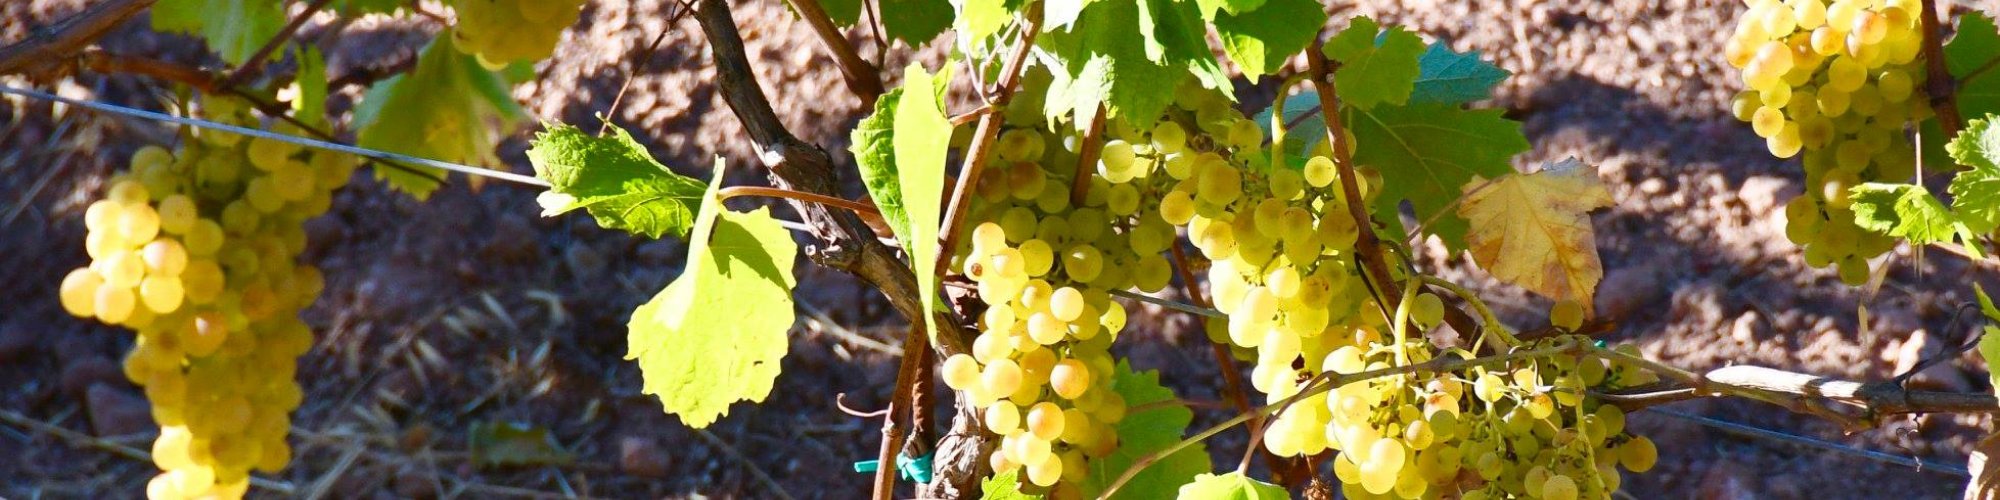 Le uve dell'Arcipelago Toscano